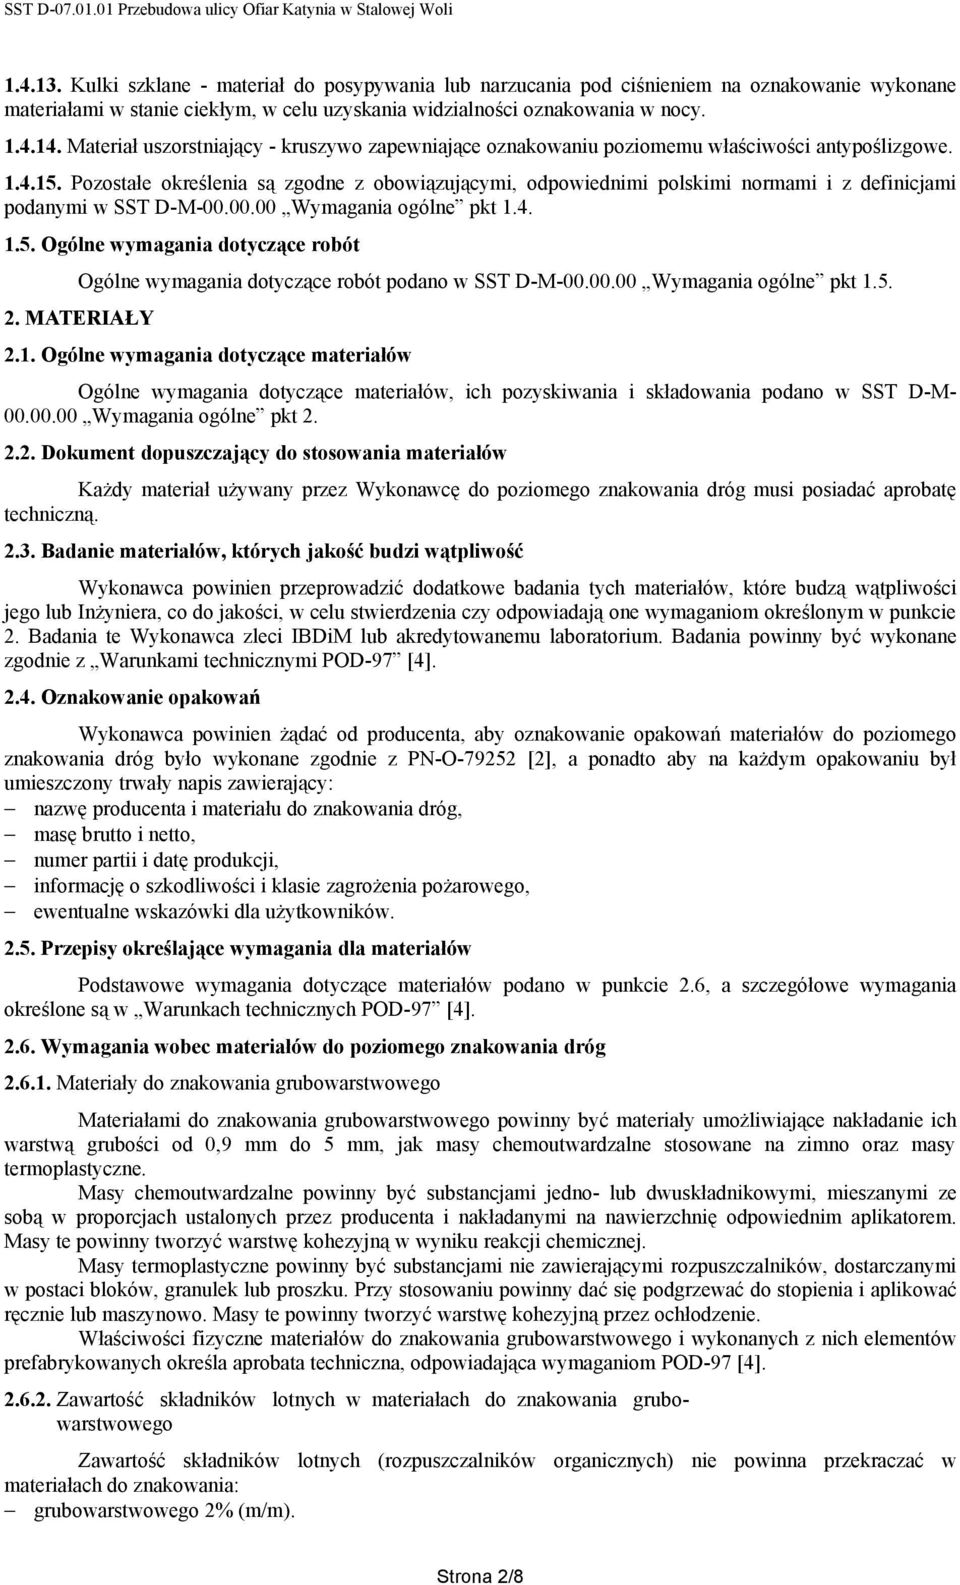 Pozostałe określenia są zgodne z obowiązującymi, odpowiednimi polskimi normami i z definicjami podanymi w SST D-M-00.00.00 Wymagania ogólne pkt 1.4. 1.5.